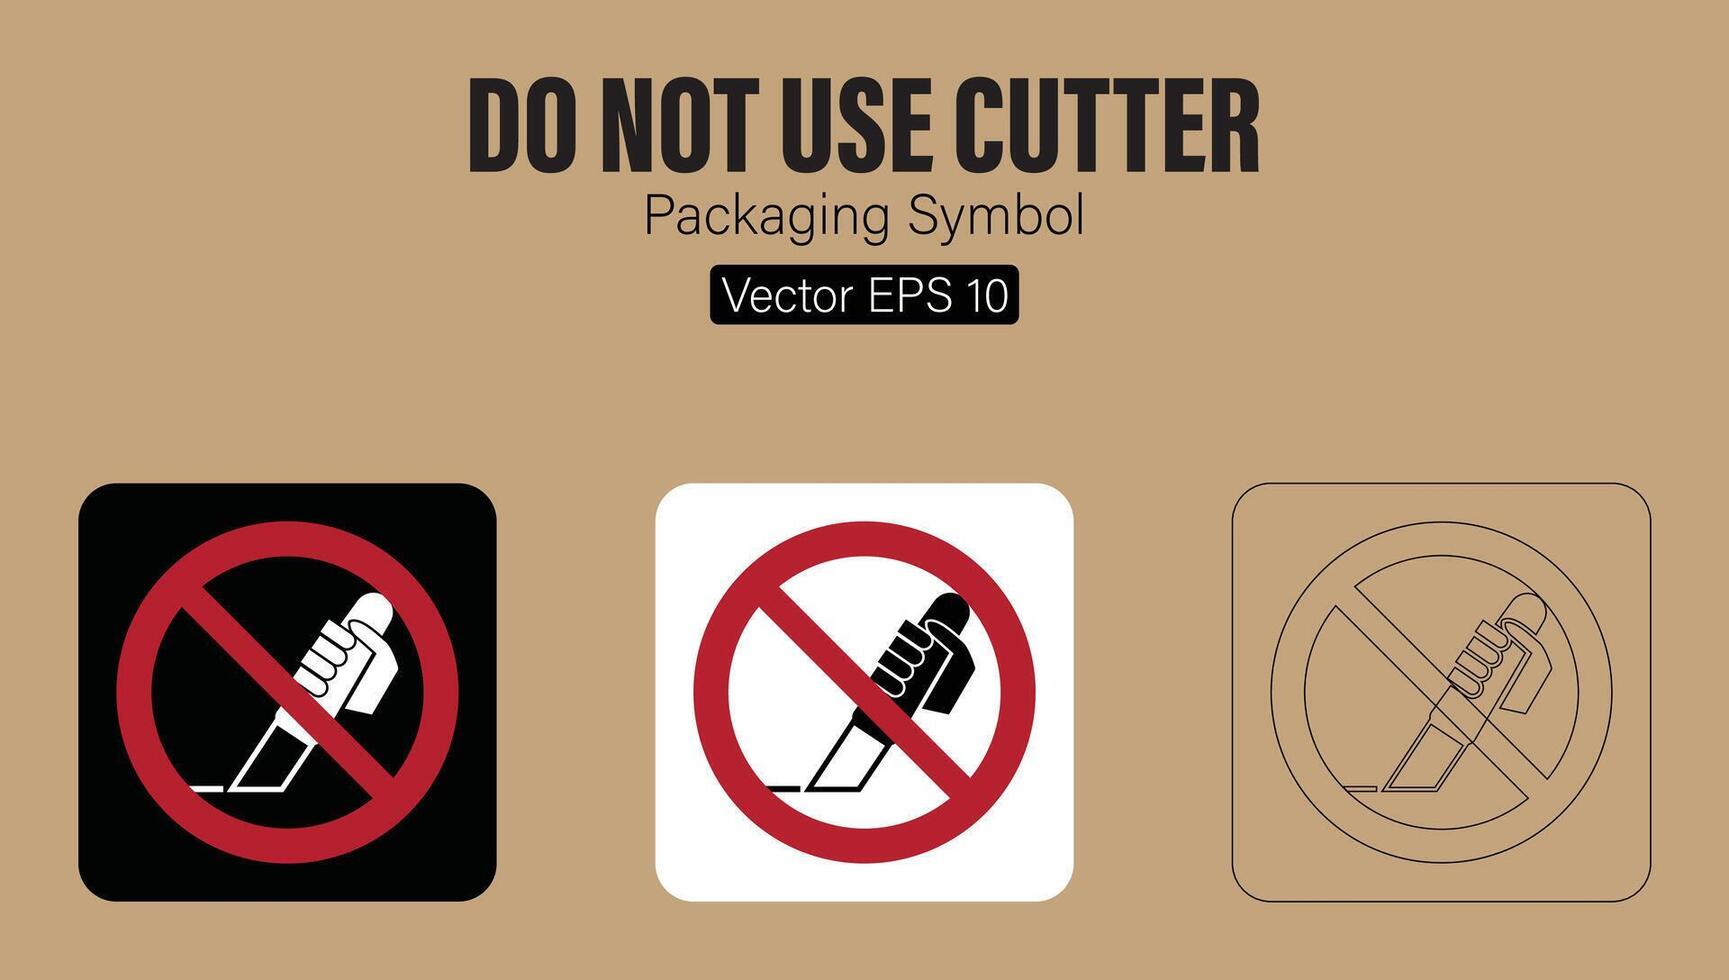 Faz não usar cortador faca embalagem símbolo vetor